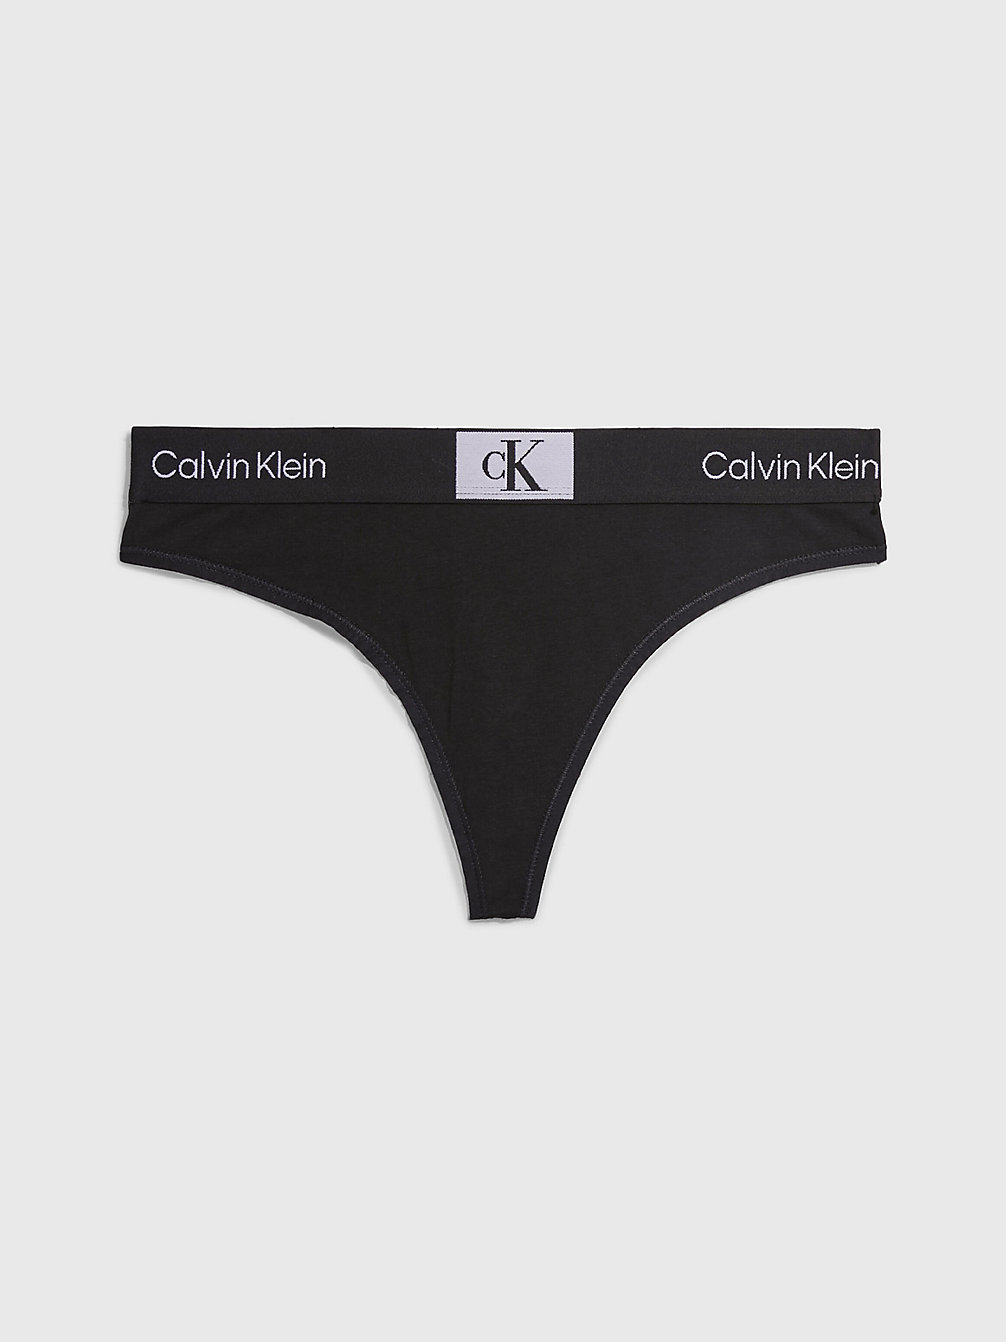 BLACK > String - Ck96 > undefined dames - Calvin Klein